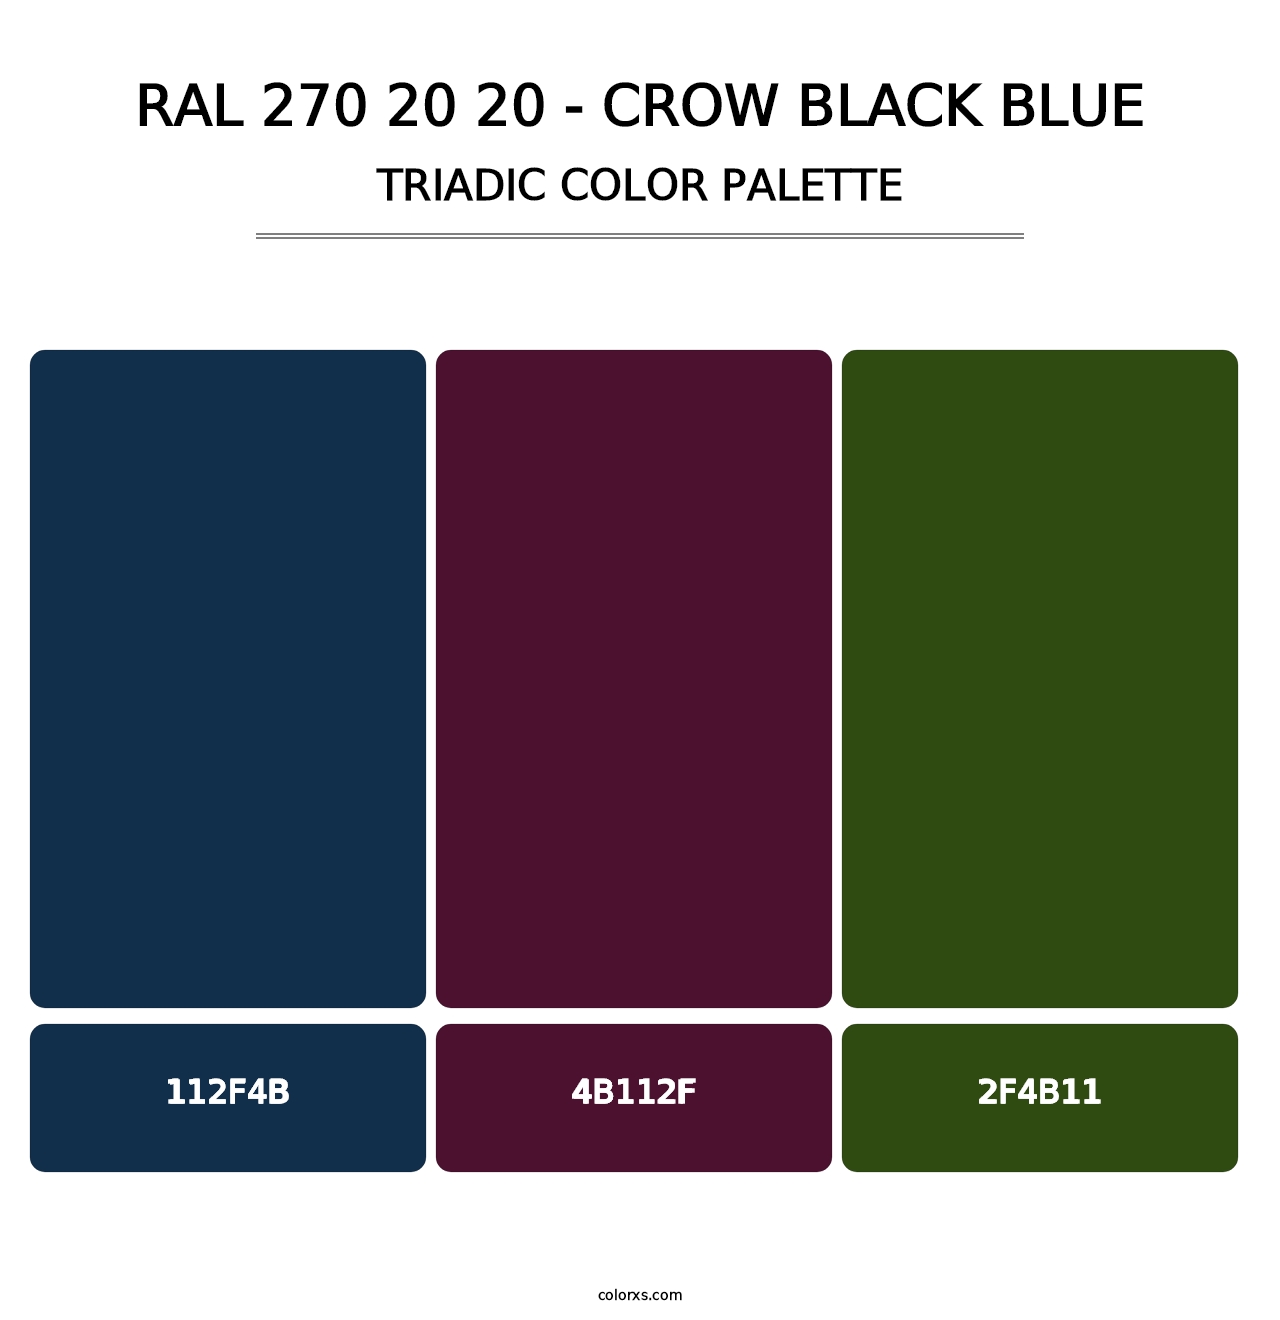 RAL 270 20 20 - Crow Black Blue - Triadic Color Palette